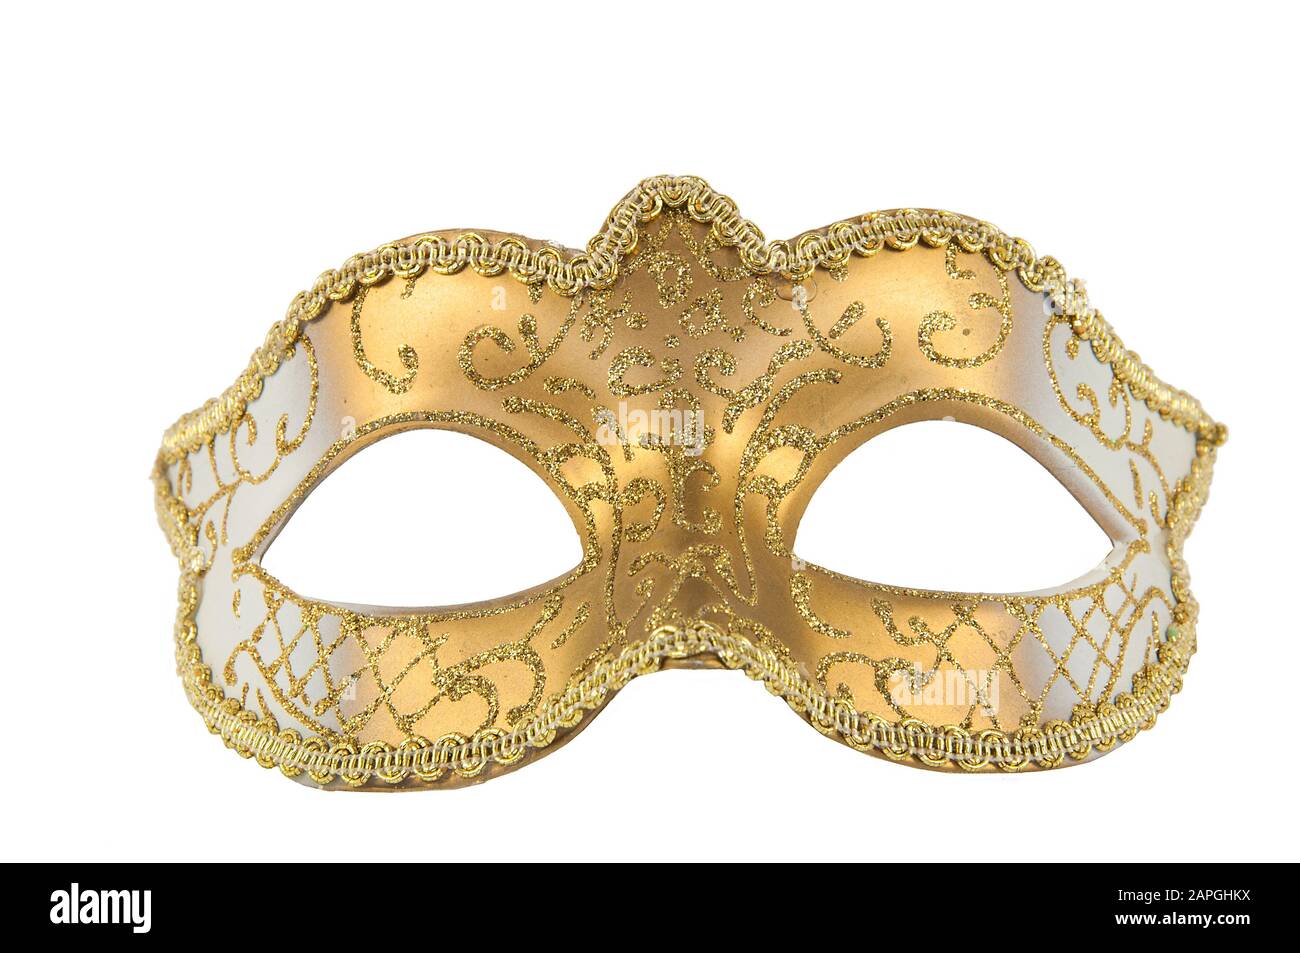 Théâtre Golden Mask, gros plan, isoler sur un fond blanc Banque D'Images